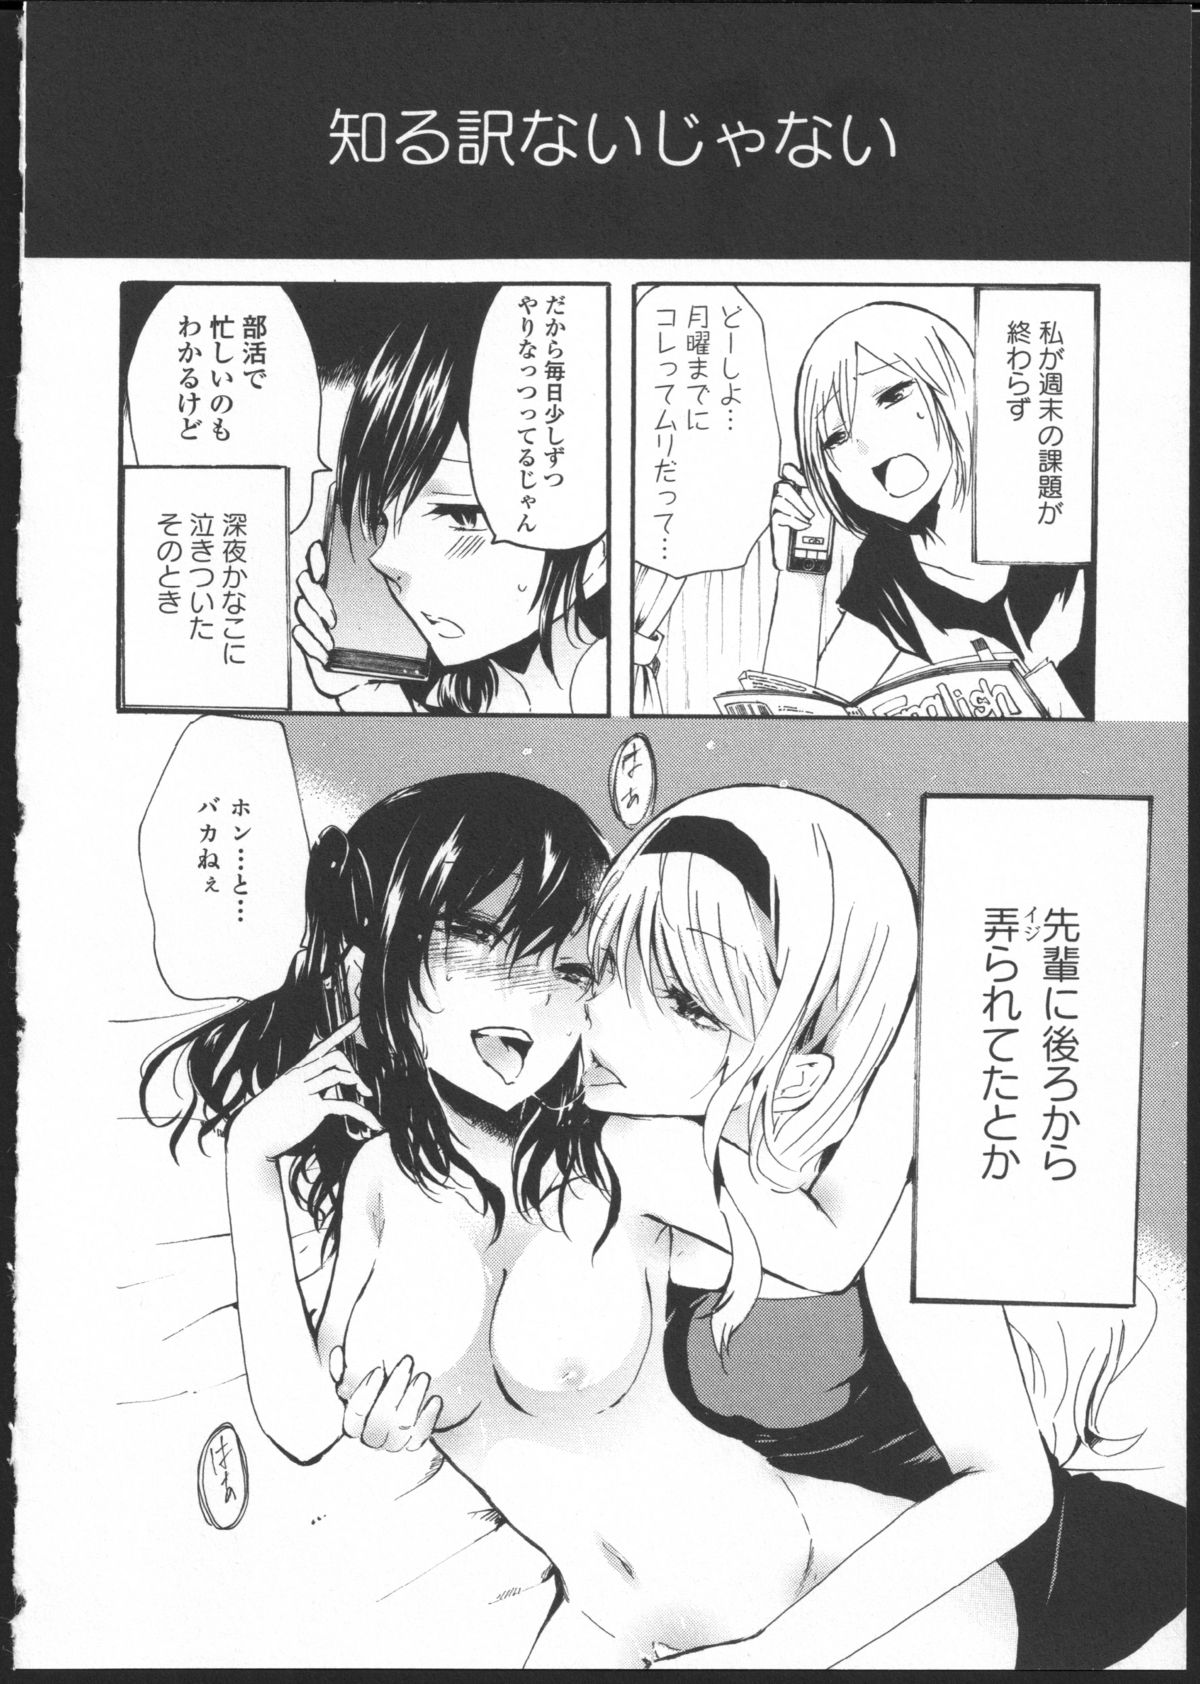 [Kuzushiro] Kimi no Sei Zenpen page 10 full